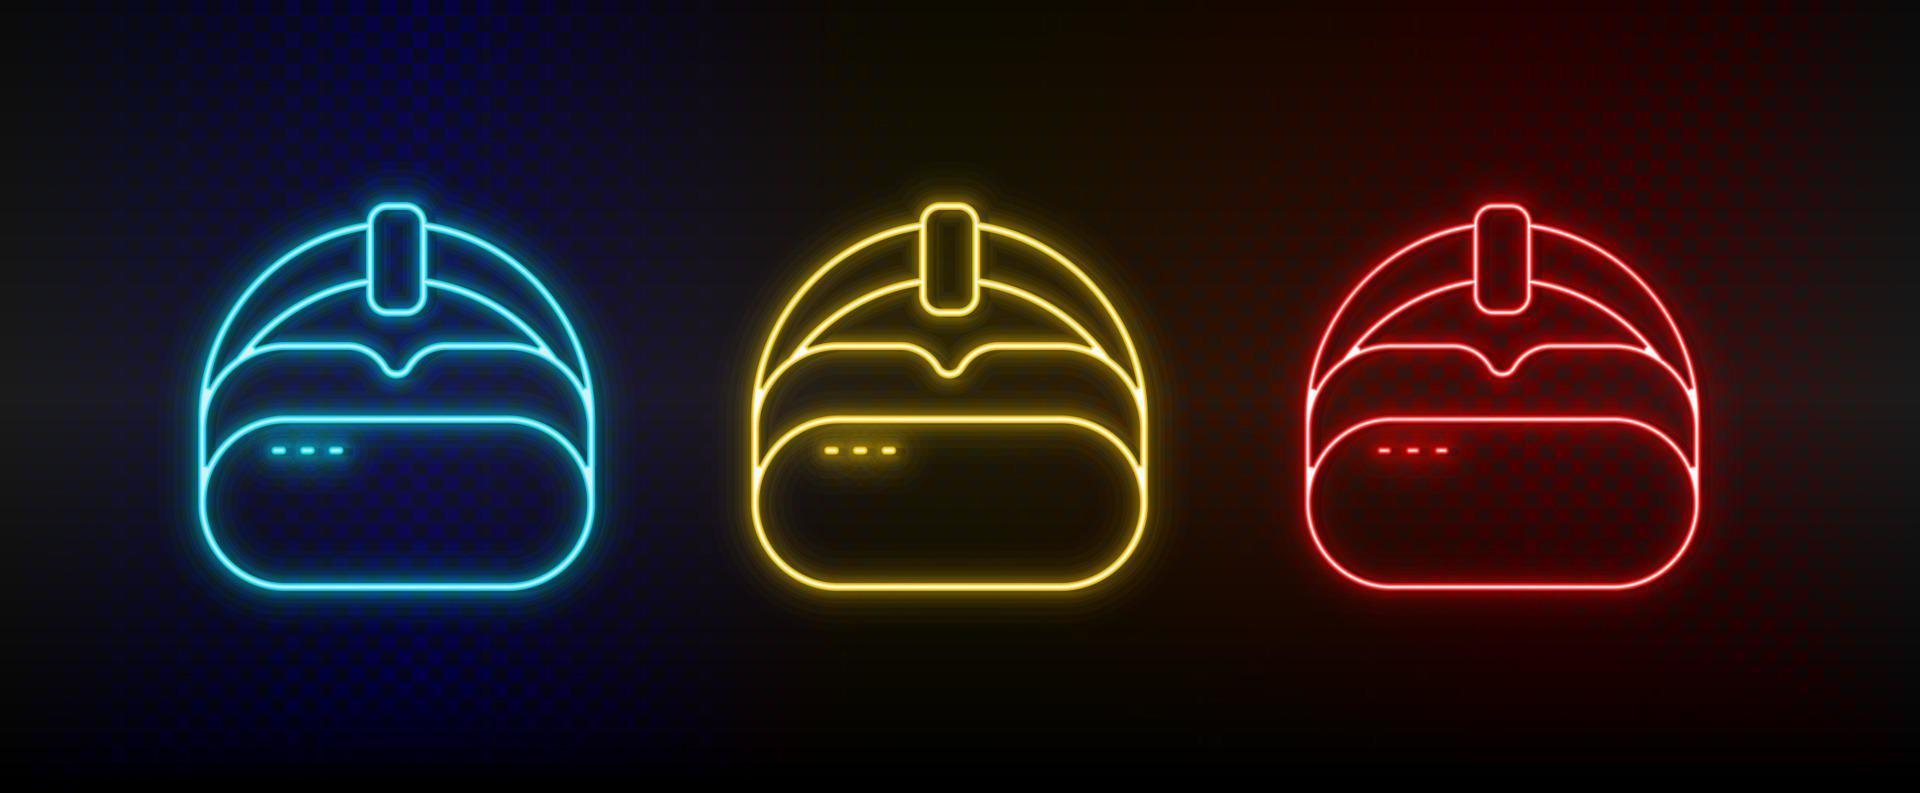 icônes au néon. chapeau vr. ensemble d'icônes vectorielles néon rouge, bleu, jaune sur fond sombre vecteur